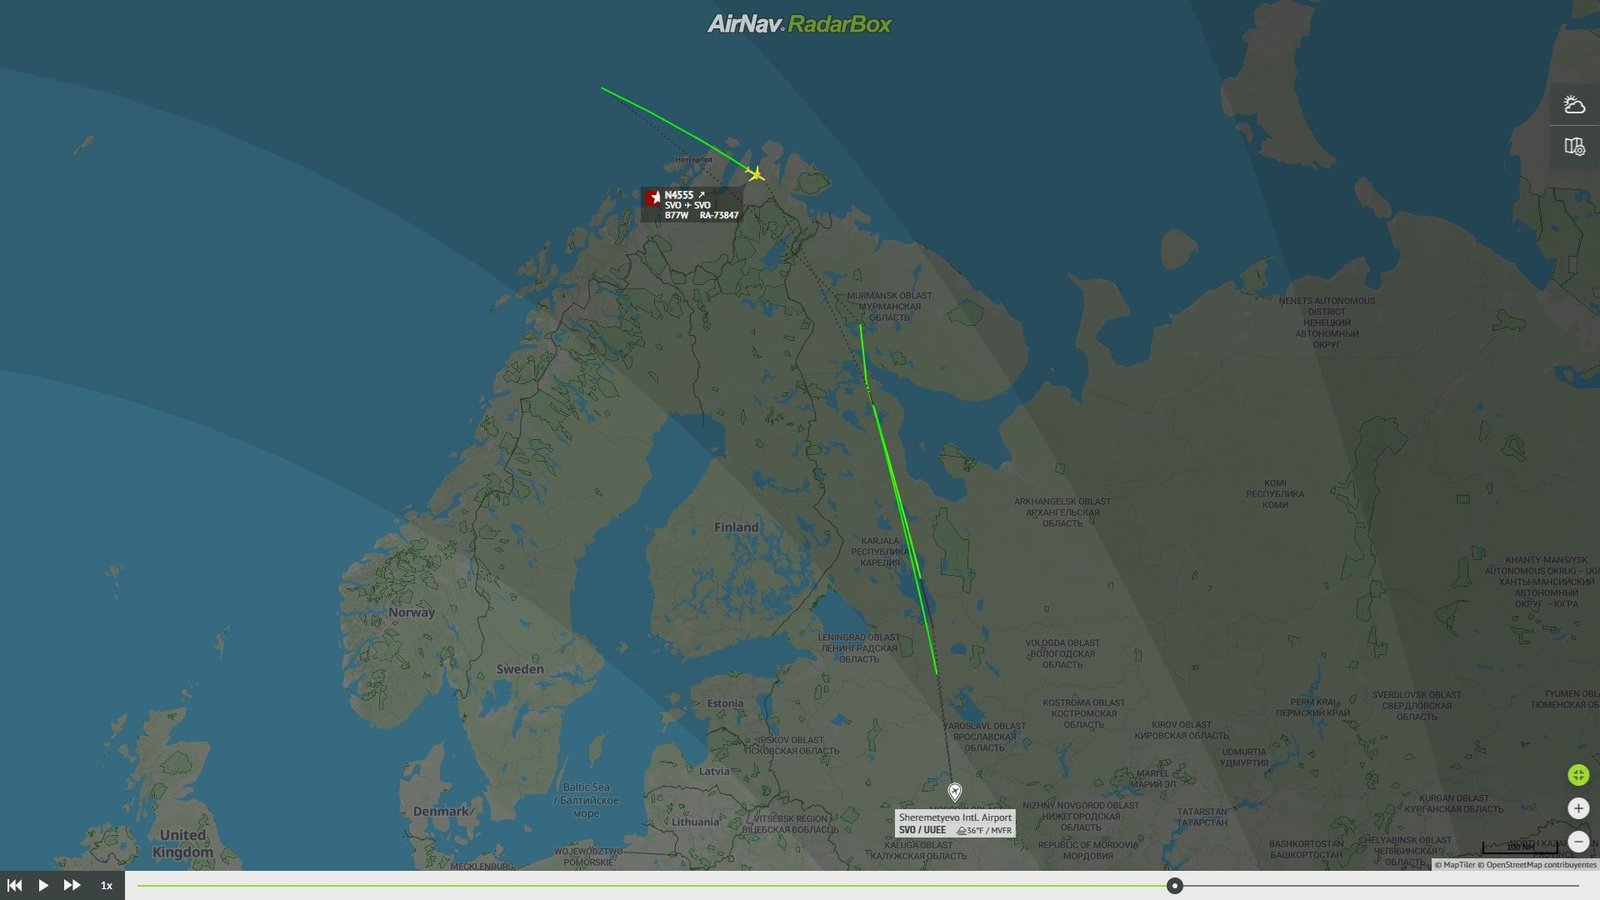 Ruta del vuelo N4555 sobrevolando Noruega en la vuelta a Moscú. Foto: RadarBox